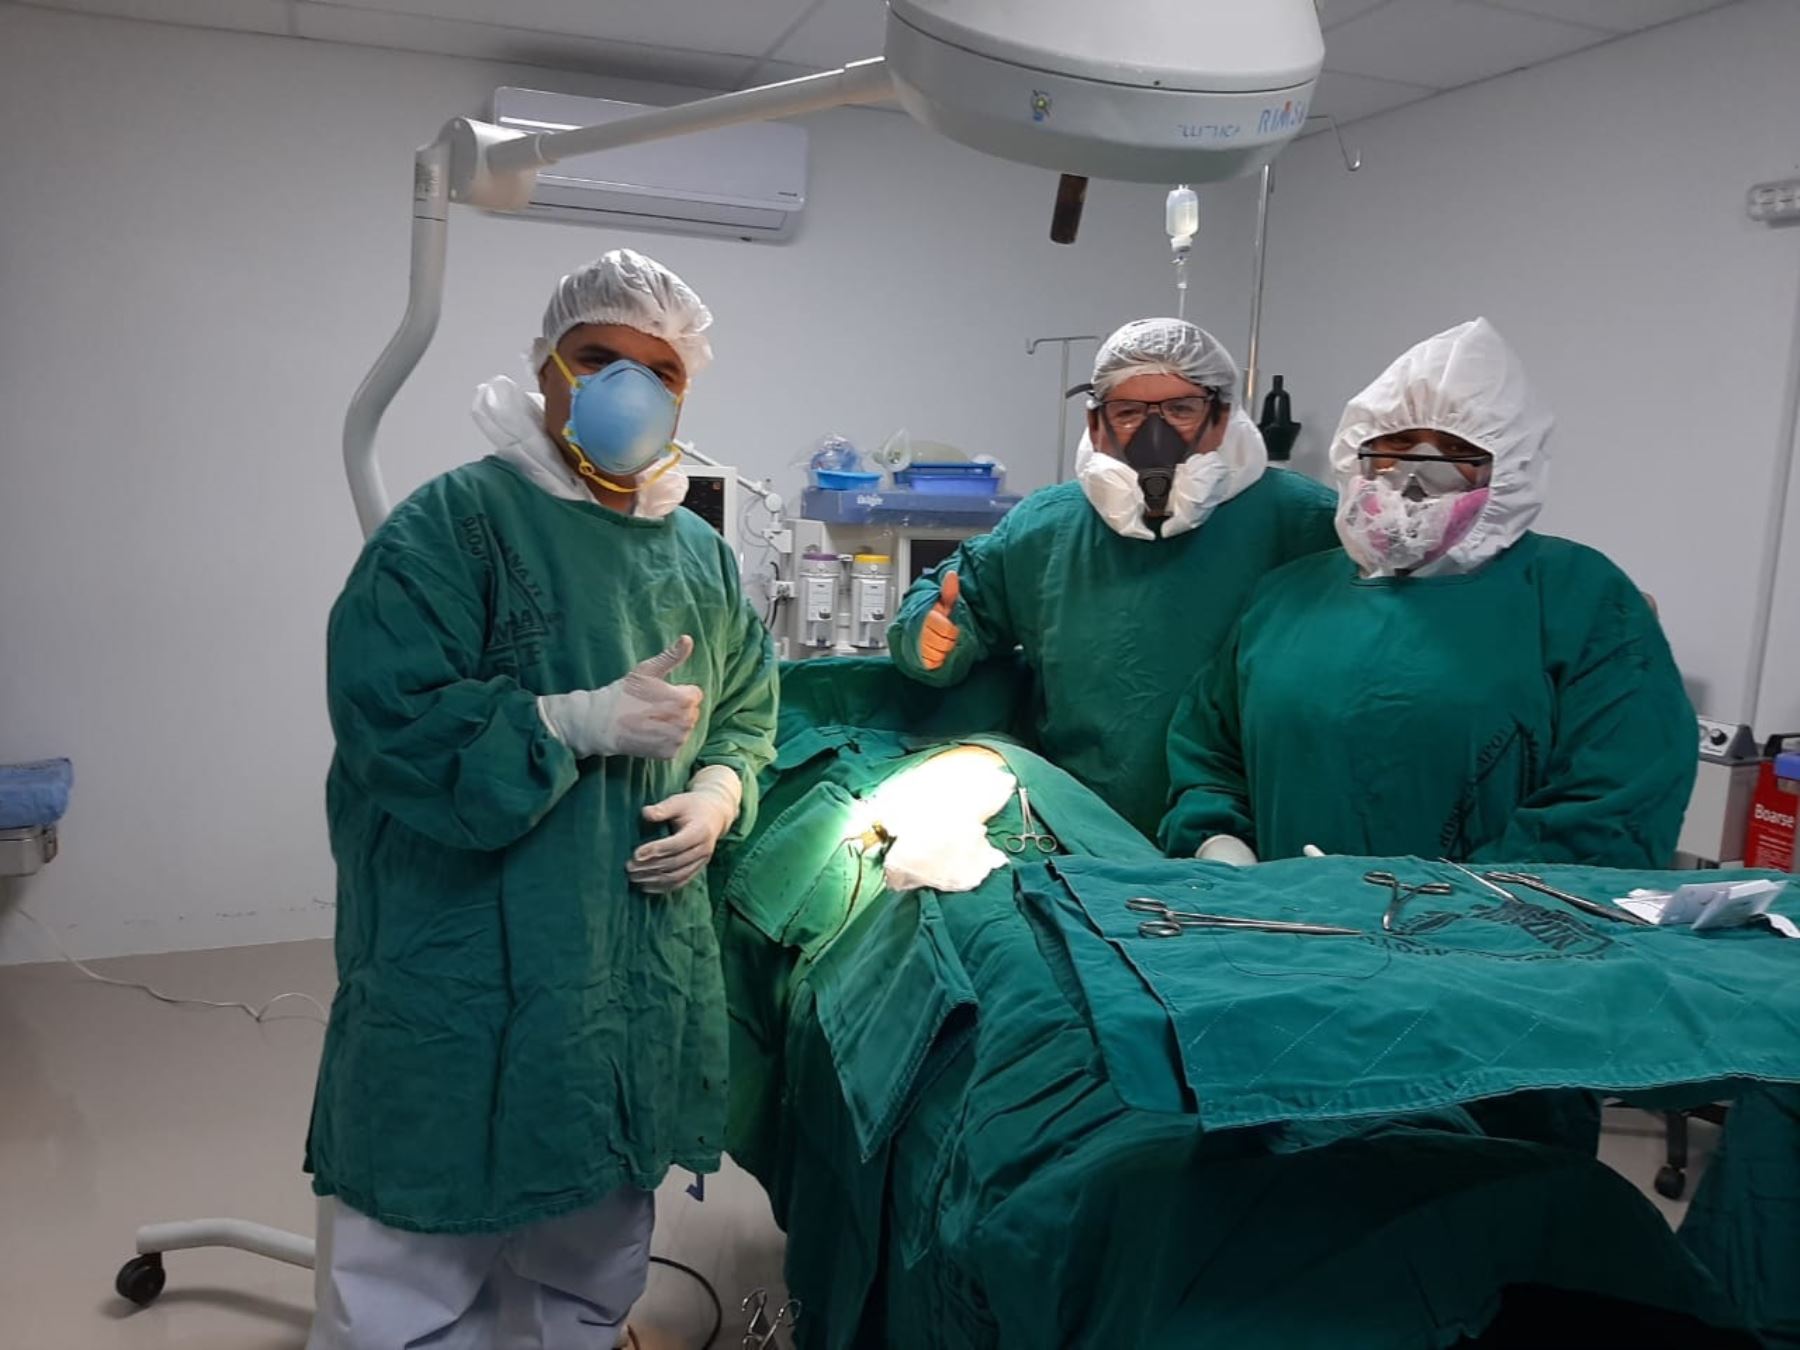 Proeza médica en Sullana, cirujanos del Hospital de Apoyo II-2 Sullana operaron con éxito y salvaron la vida a gestante con covid-19. Foto: ANDINA/difusión.